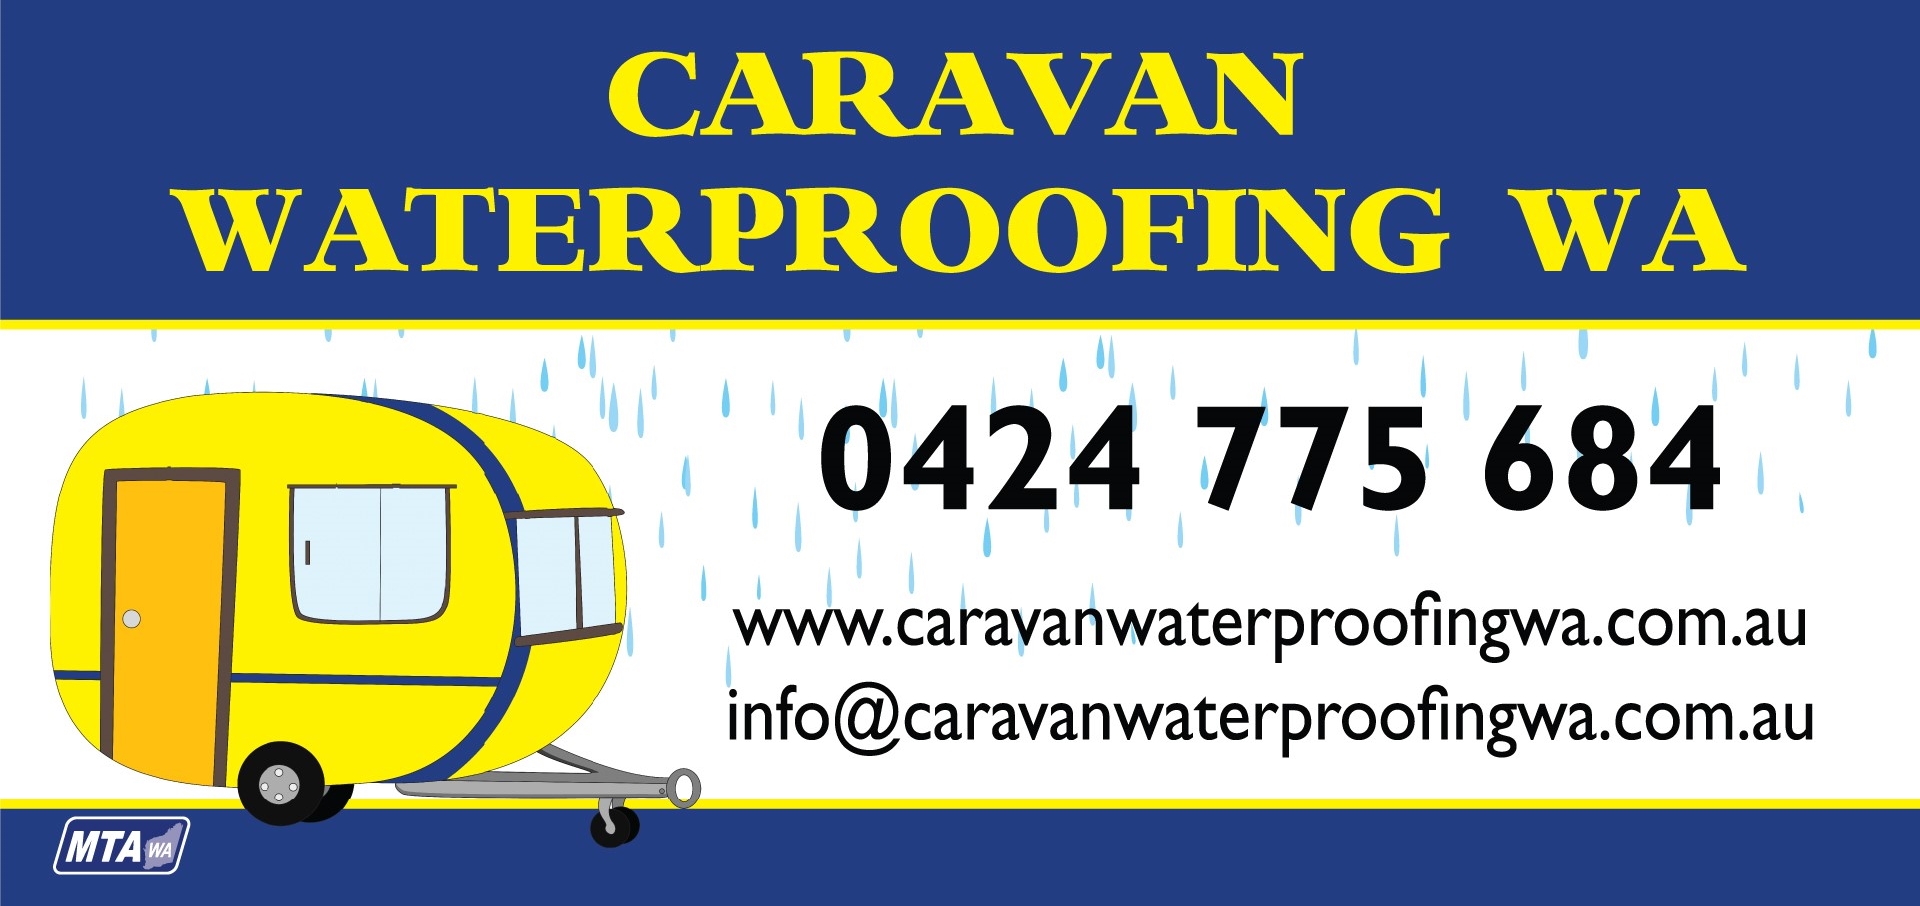 Caravan Water Proofing WA